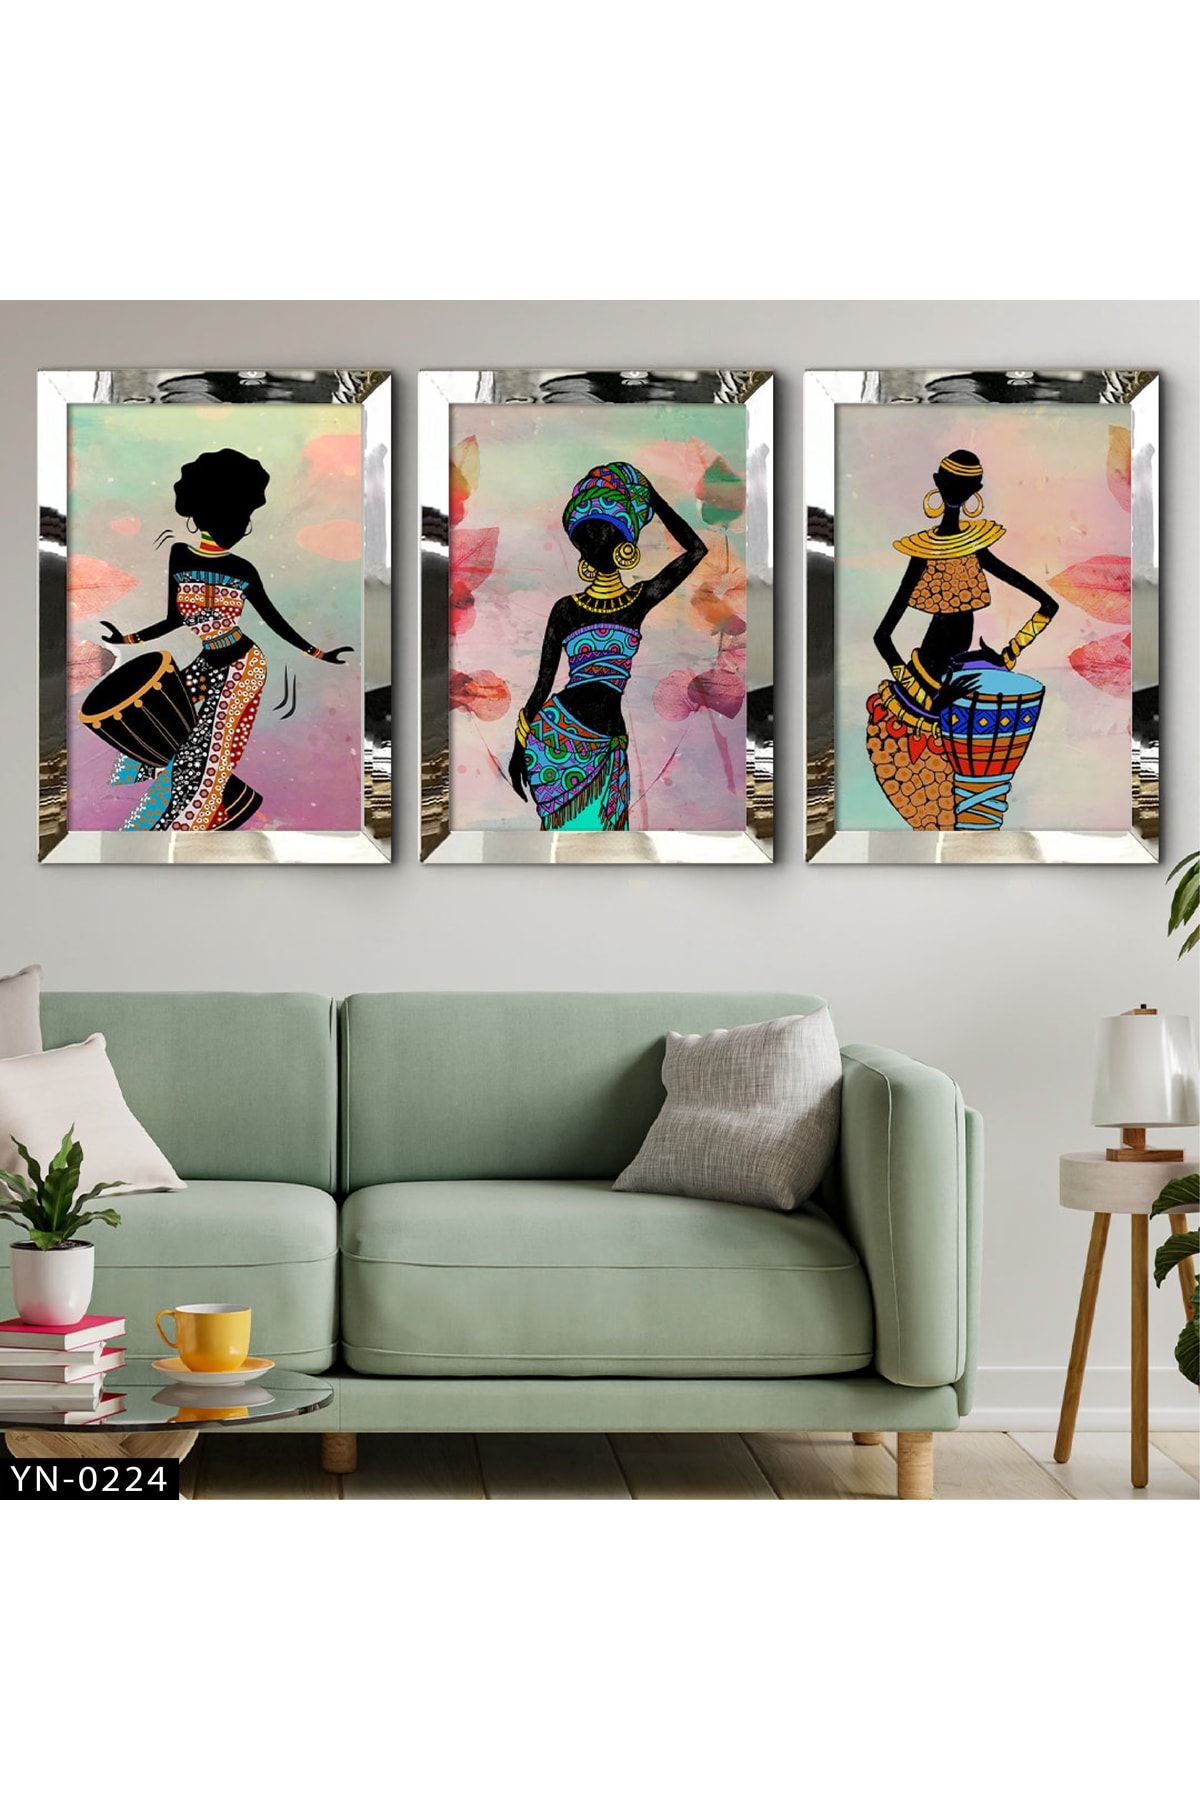 hanhomeart Renkli Sanatsal Zenci Kadın Figürleri - Gümüş Ayna Çerçeveli Tablo 3'lü Set-hyn-0224